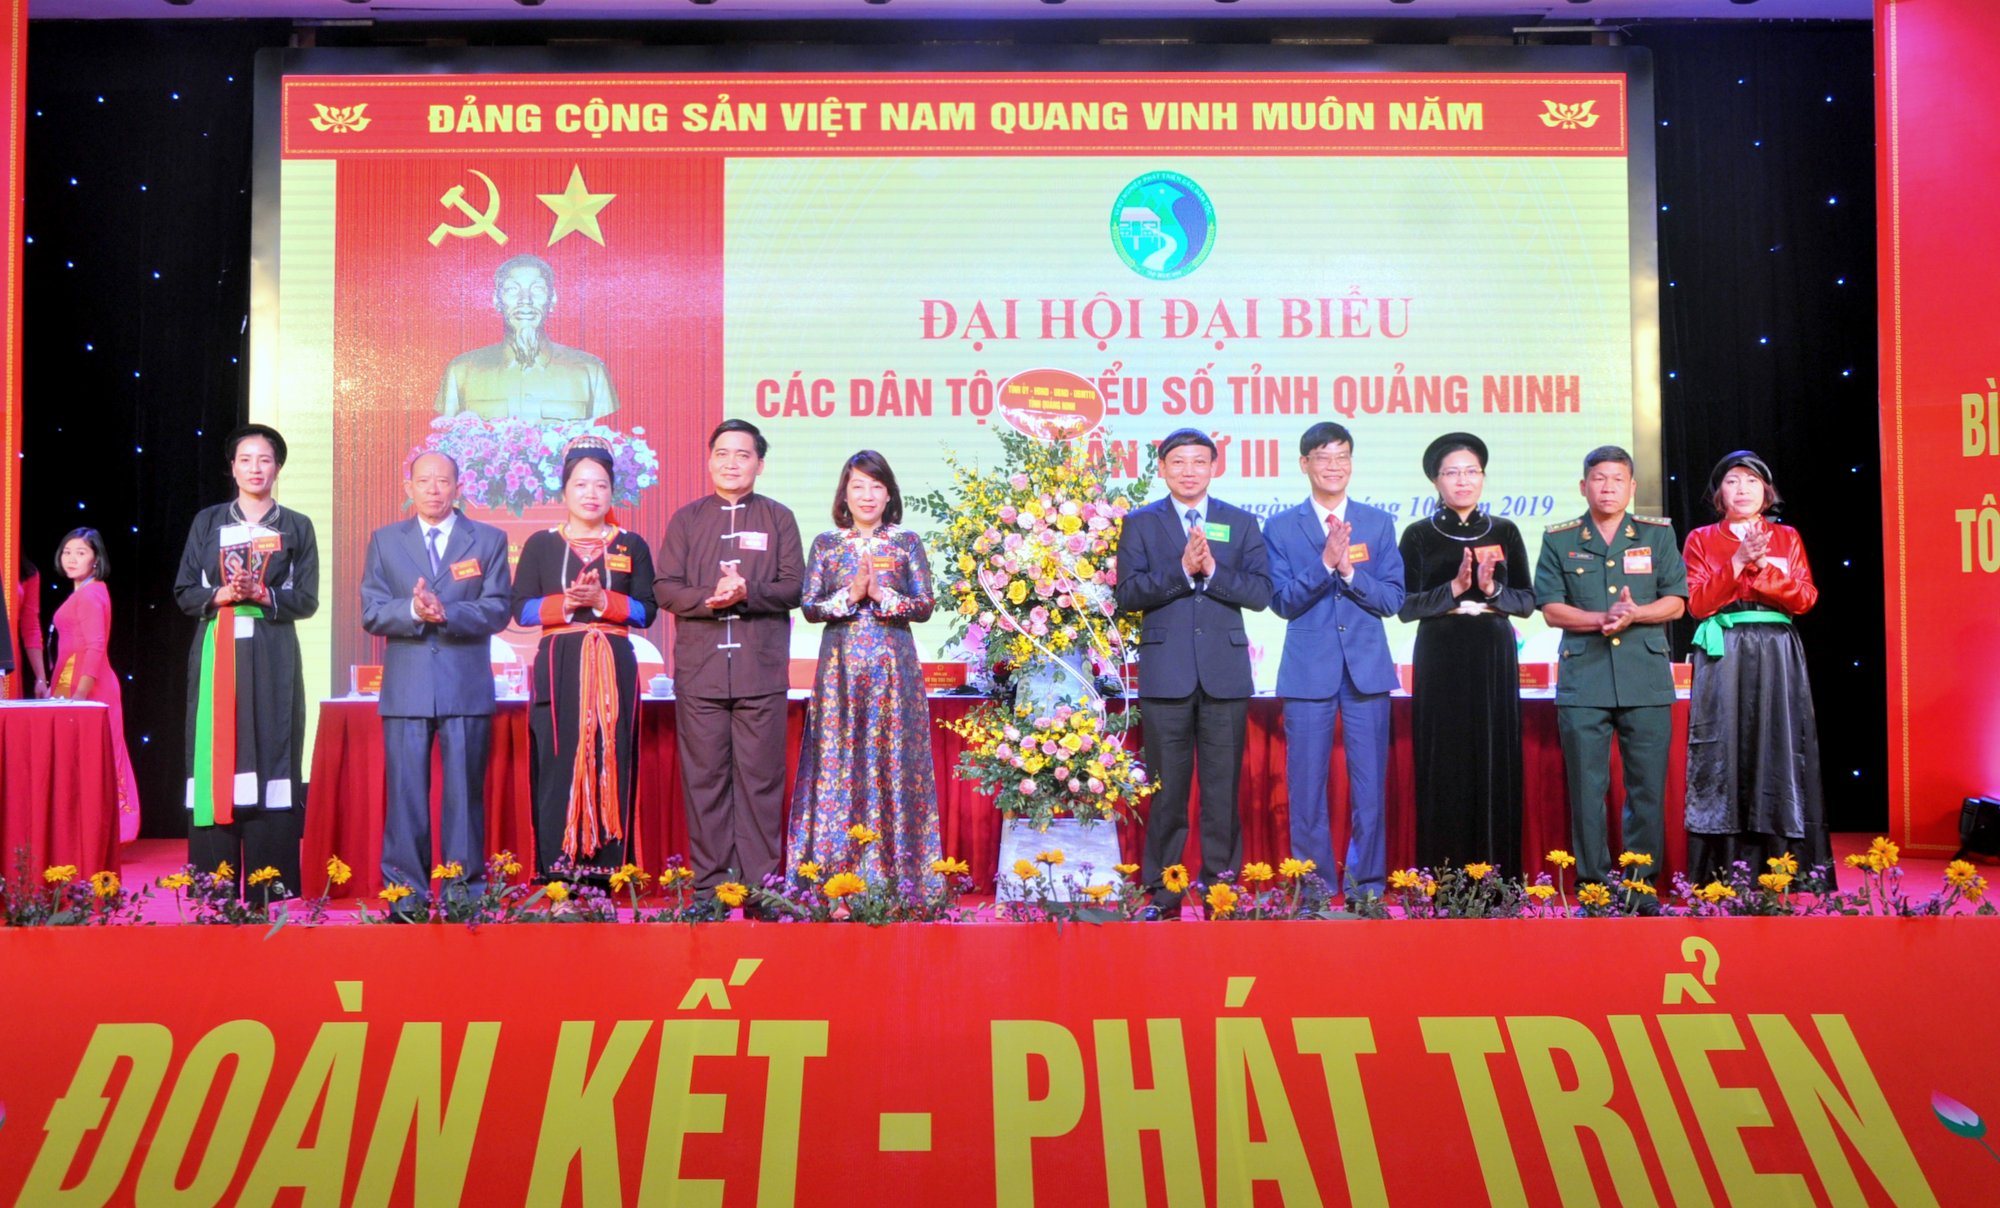 Đồng chí Nguyễn Xuân Ký, Bí thư Tỉnh ủy, Chủ tịch HĐND tỉnh thay mặt Tỉnh ủy, HĐND, UBND tỉnh tặng hoa chúc mừng Đại hội.